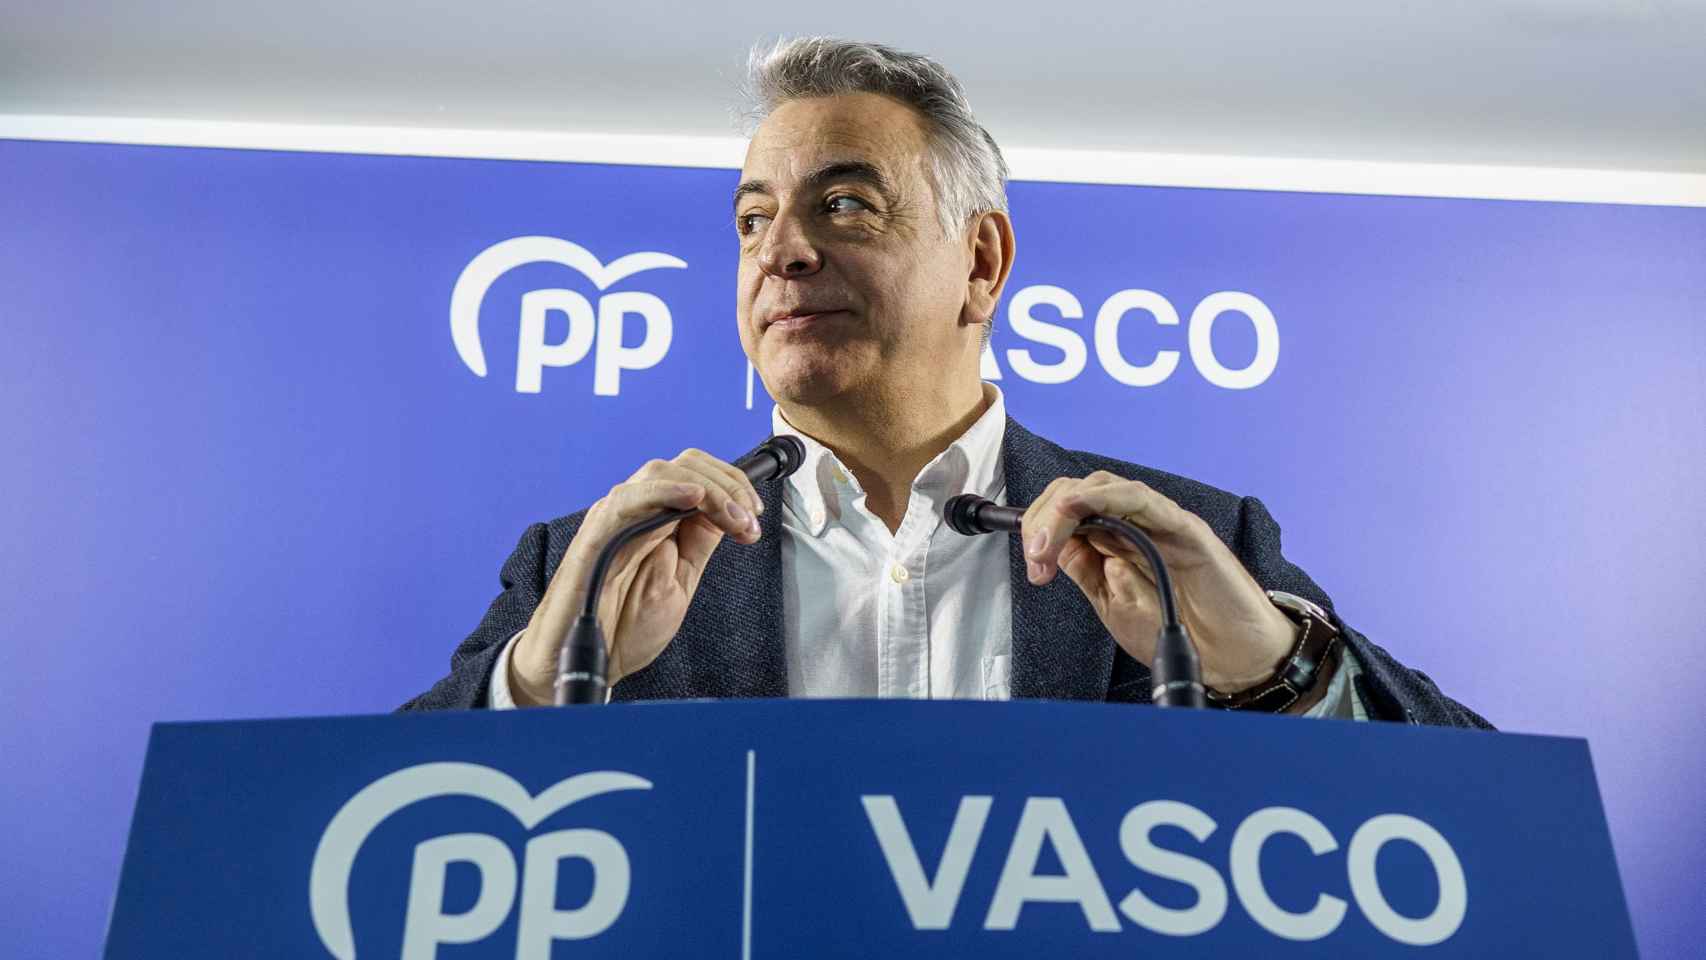 El presidente del Partido Popular del País Vasco, Javier De Andrés, clausura este sábado en Bilbao la asamblea de cargos públicos del PP vasco / Javier Zorrilla - EFE